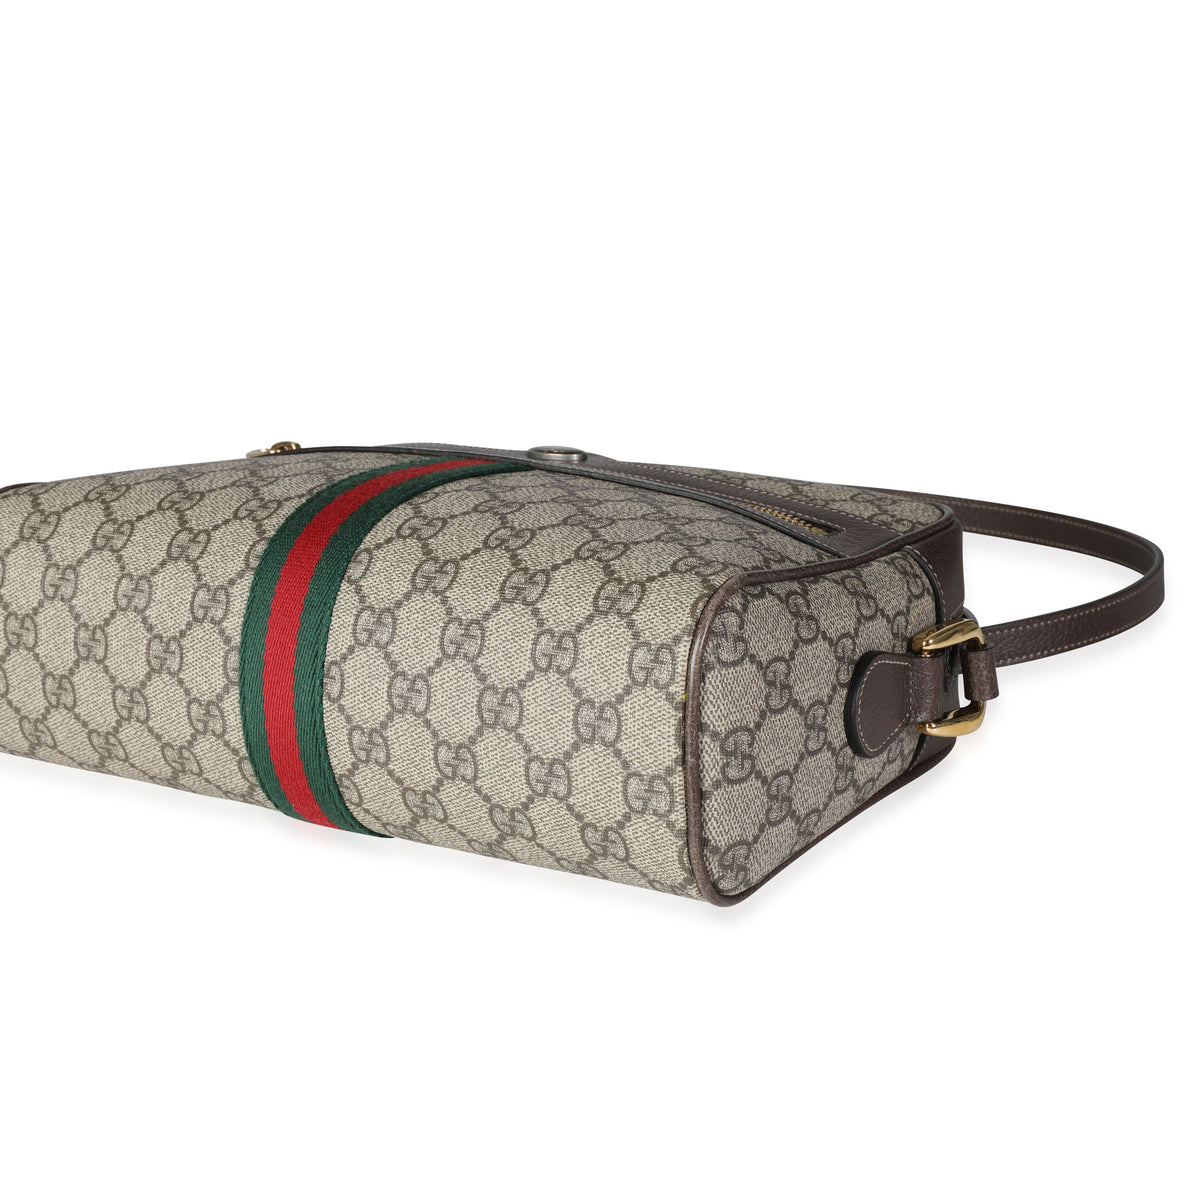 Gucci, GG Supreme Canvas Micro Cross-body Bag, Mens